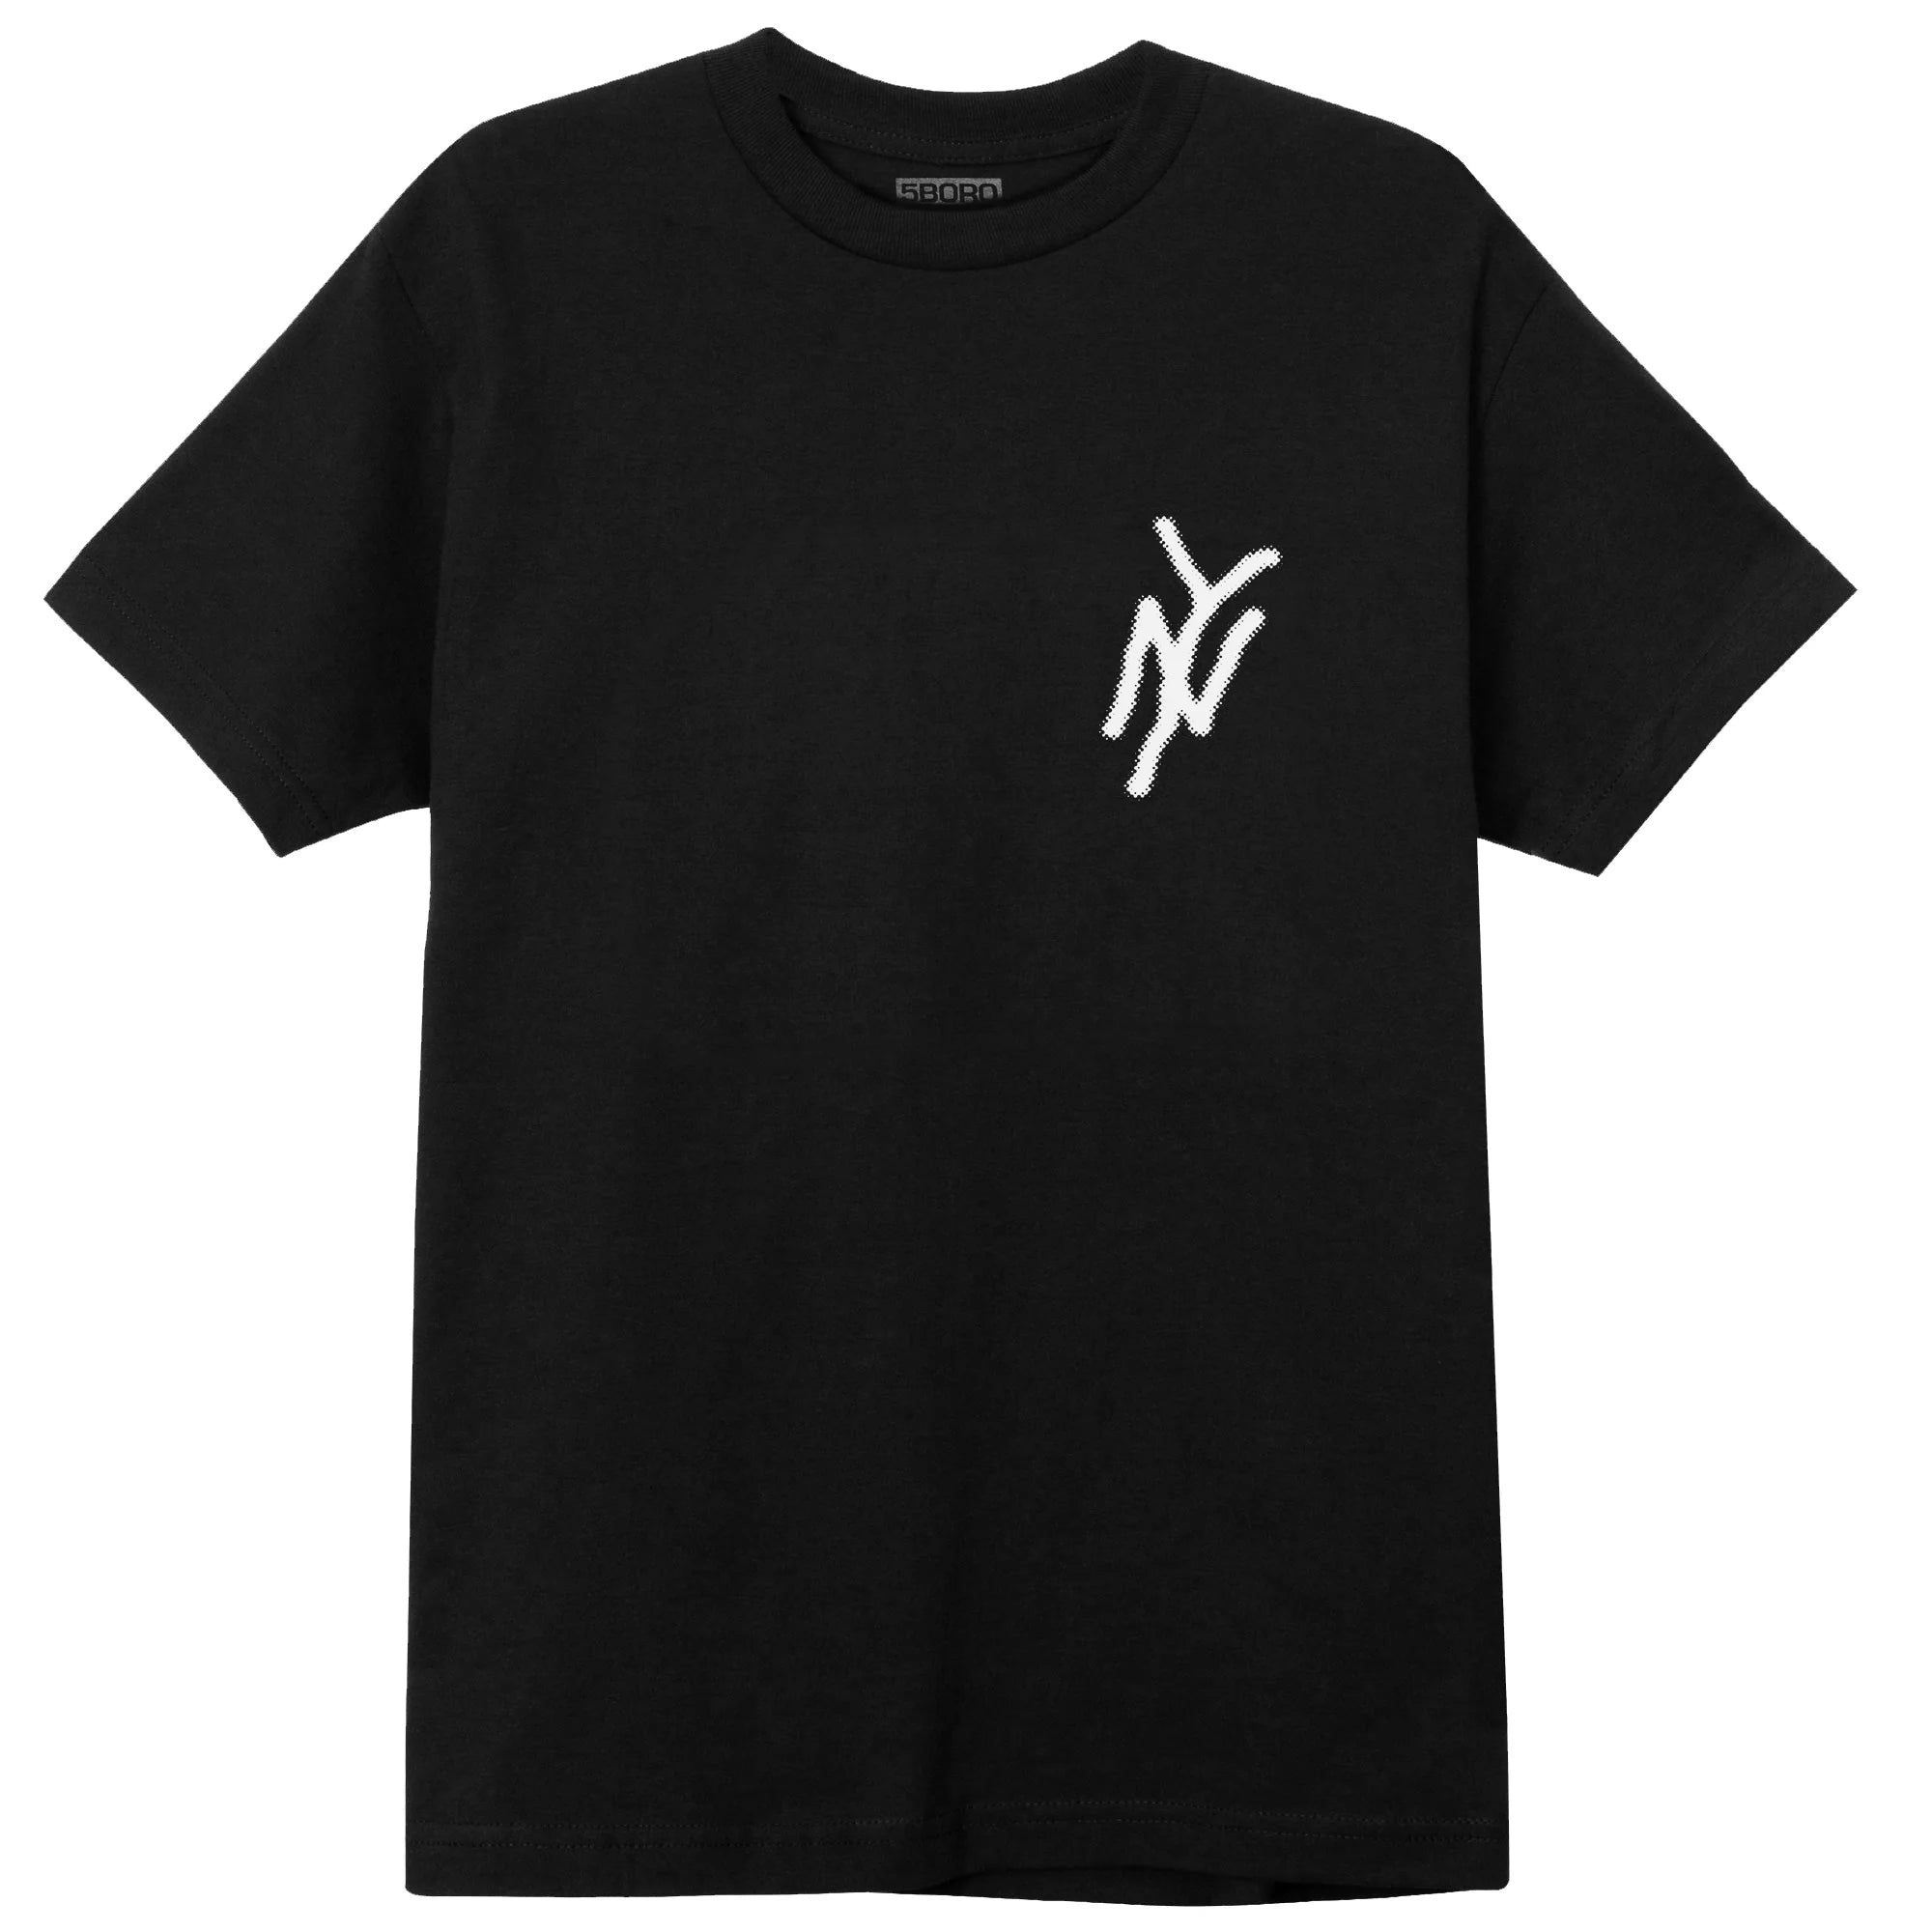 Black short sleeve tee 5boro NY logo in white